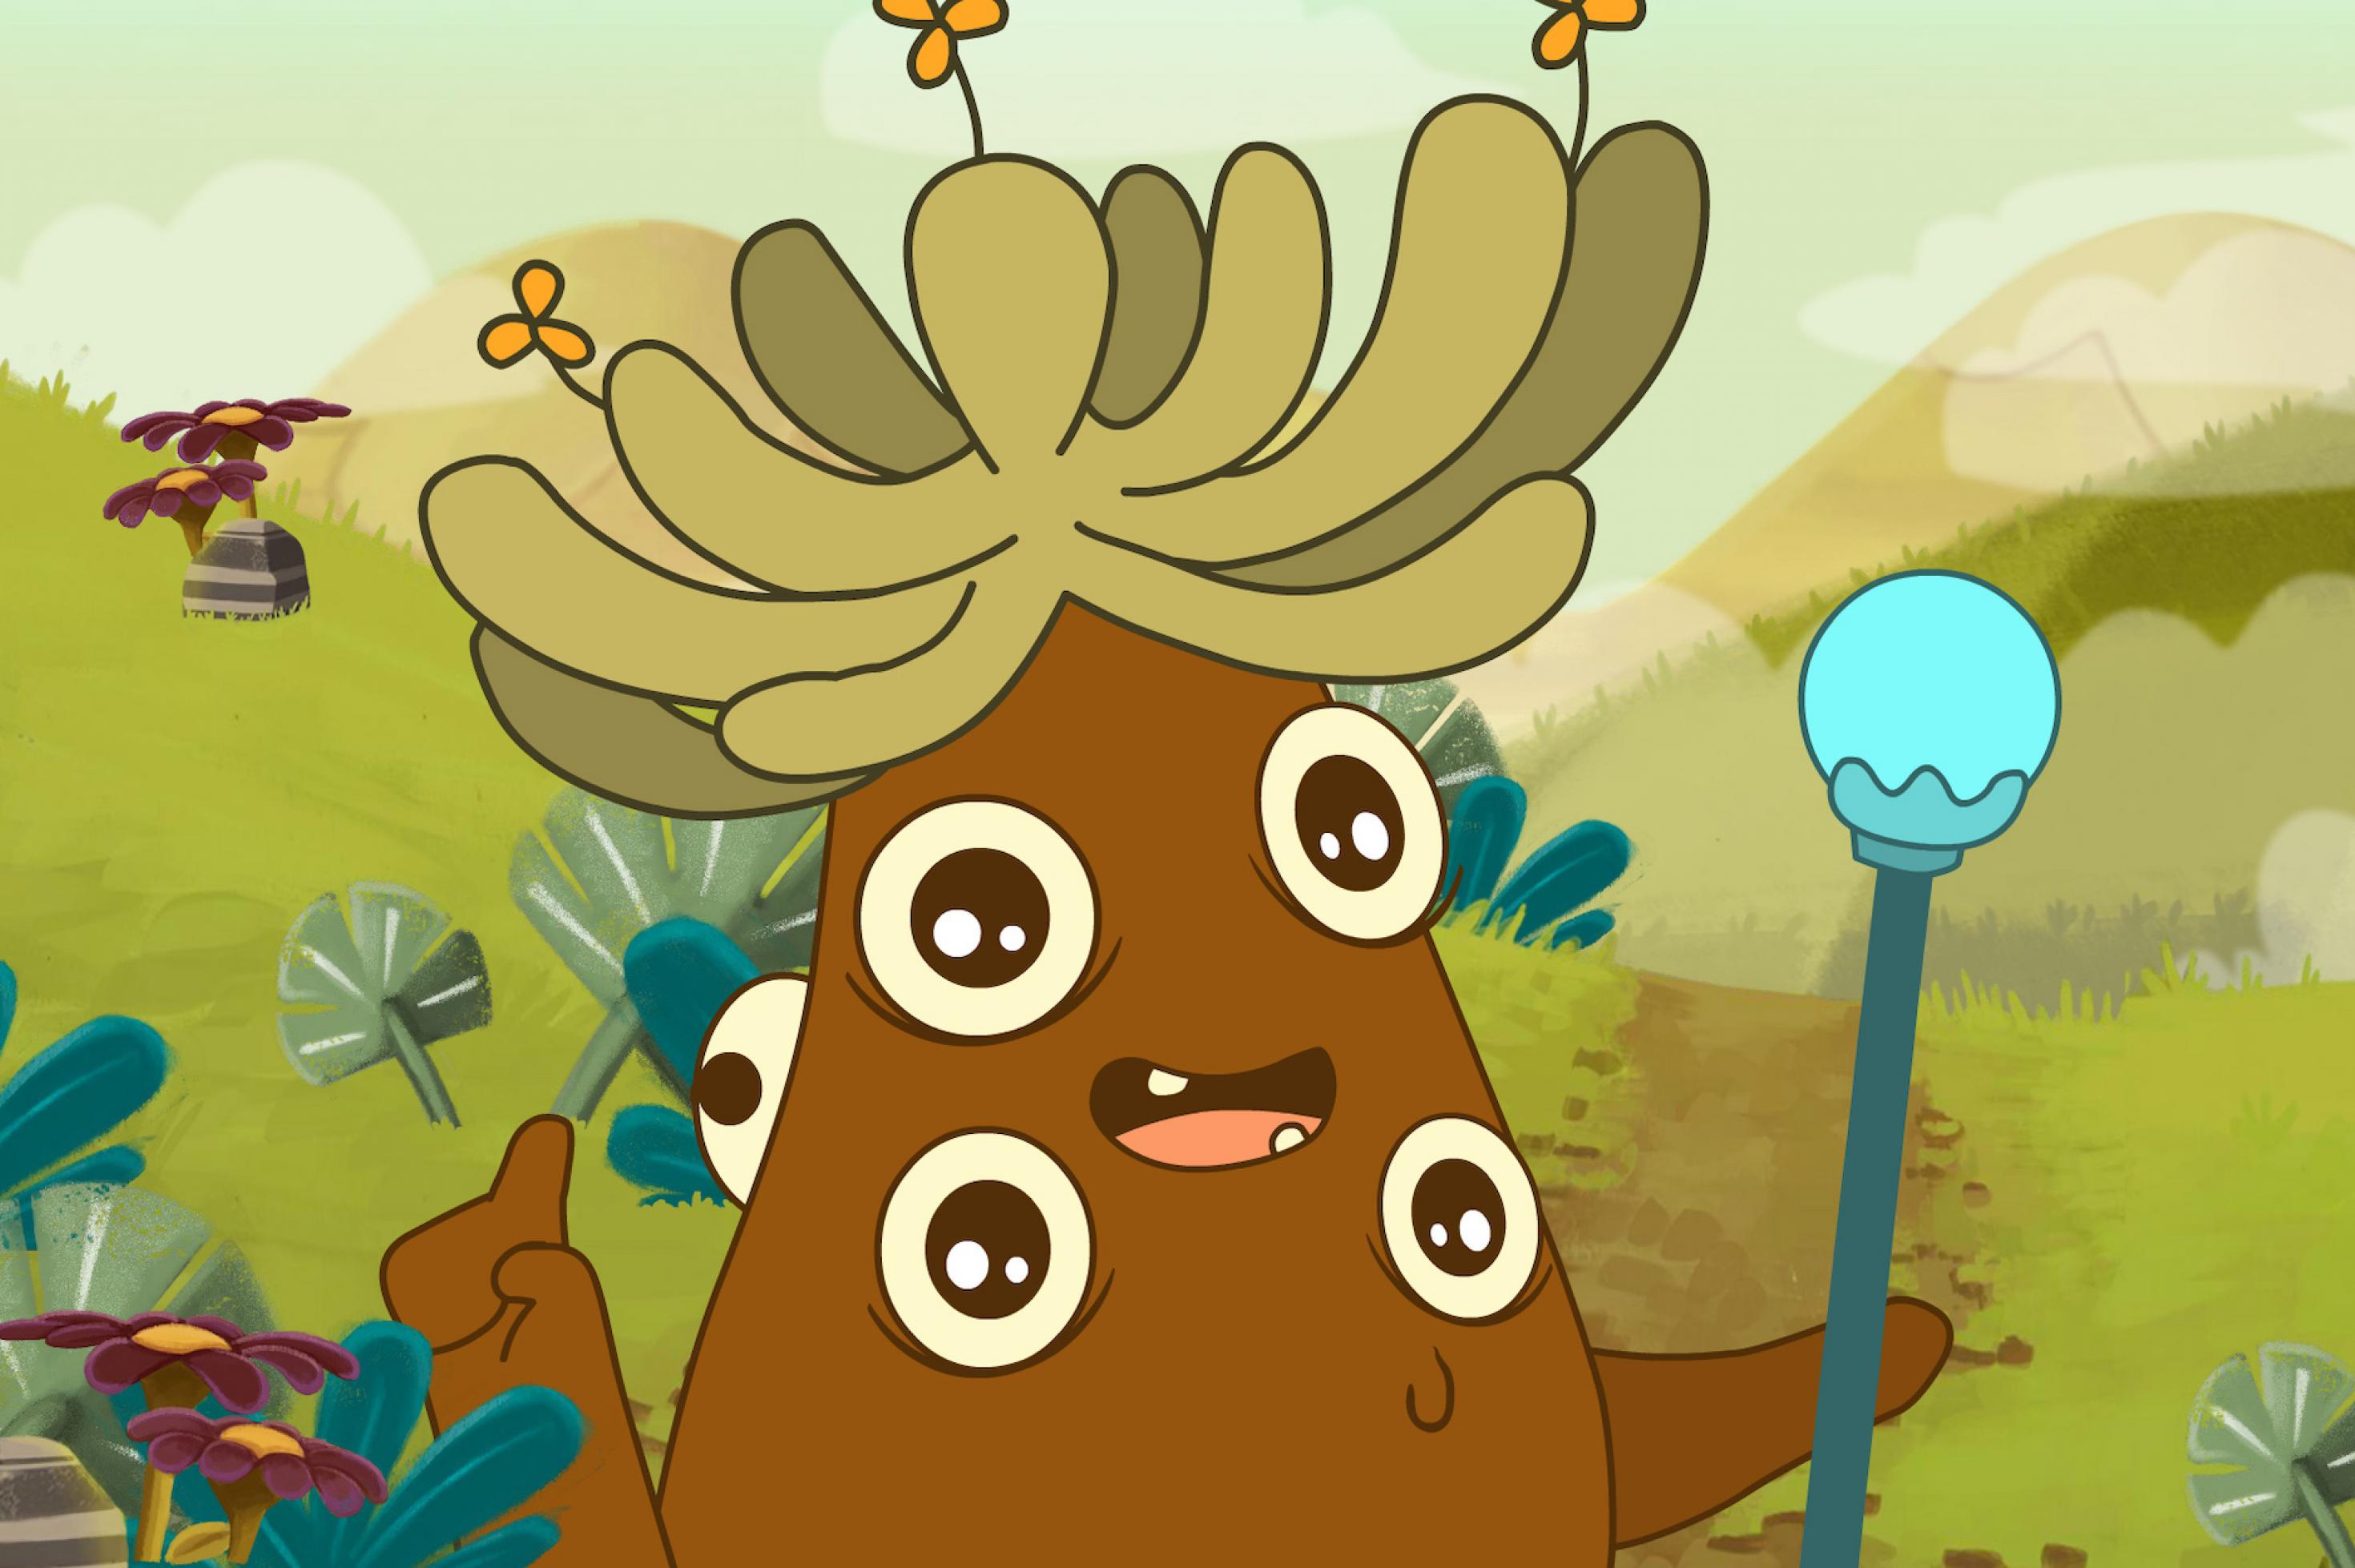 Kartoffel-artige Zeichentrickfigur mit fünf Augen steht in Berglandschaft. Sie hat eine Art grüne Rastalockenkrone auf dem Kopf, aus der Blümchen ragen. In einer Hand hält sie ein Szepter.